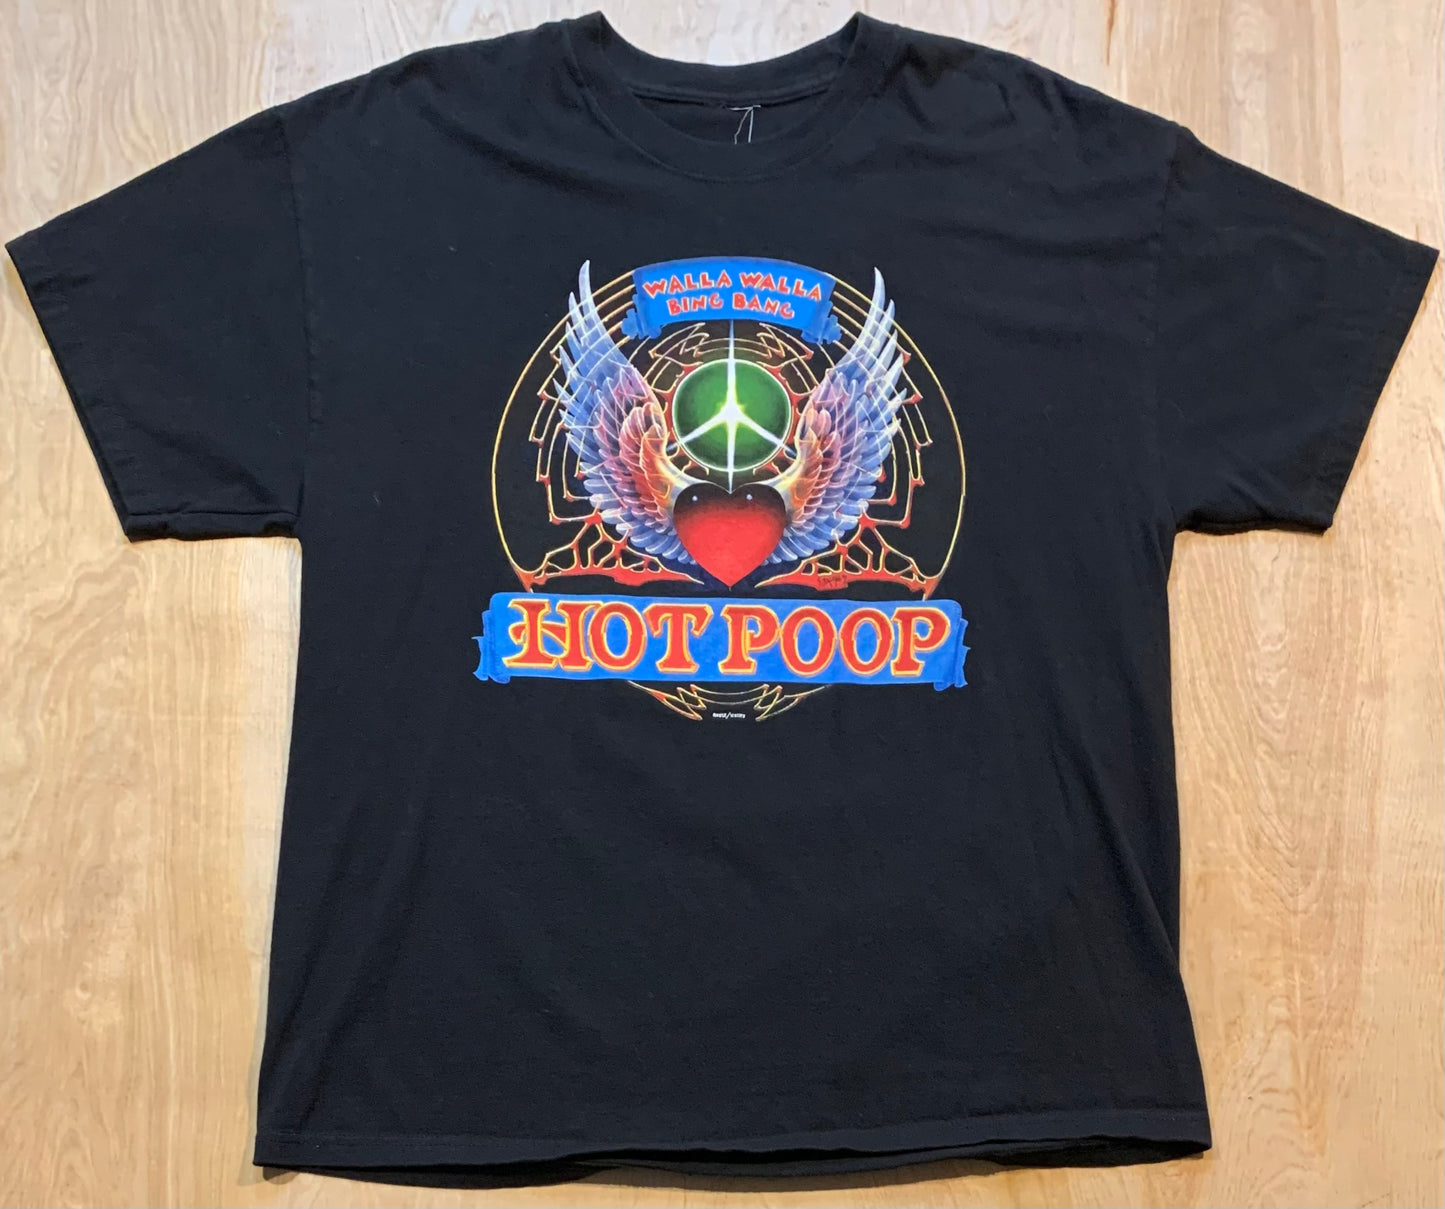 2000's Hot Poop "Walla Walla Bing Bang" Graphic T-Shirt